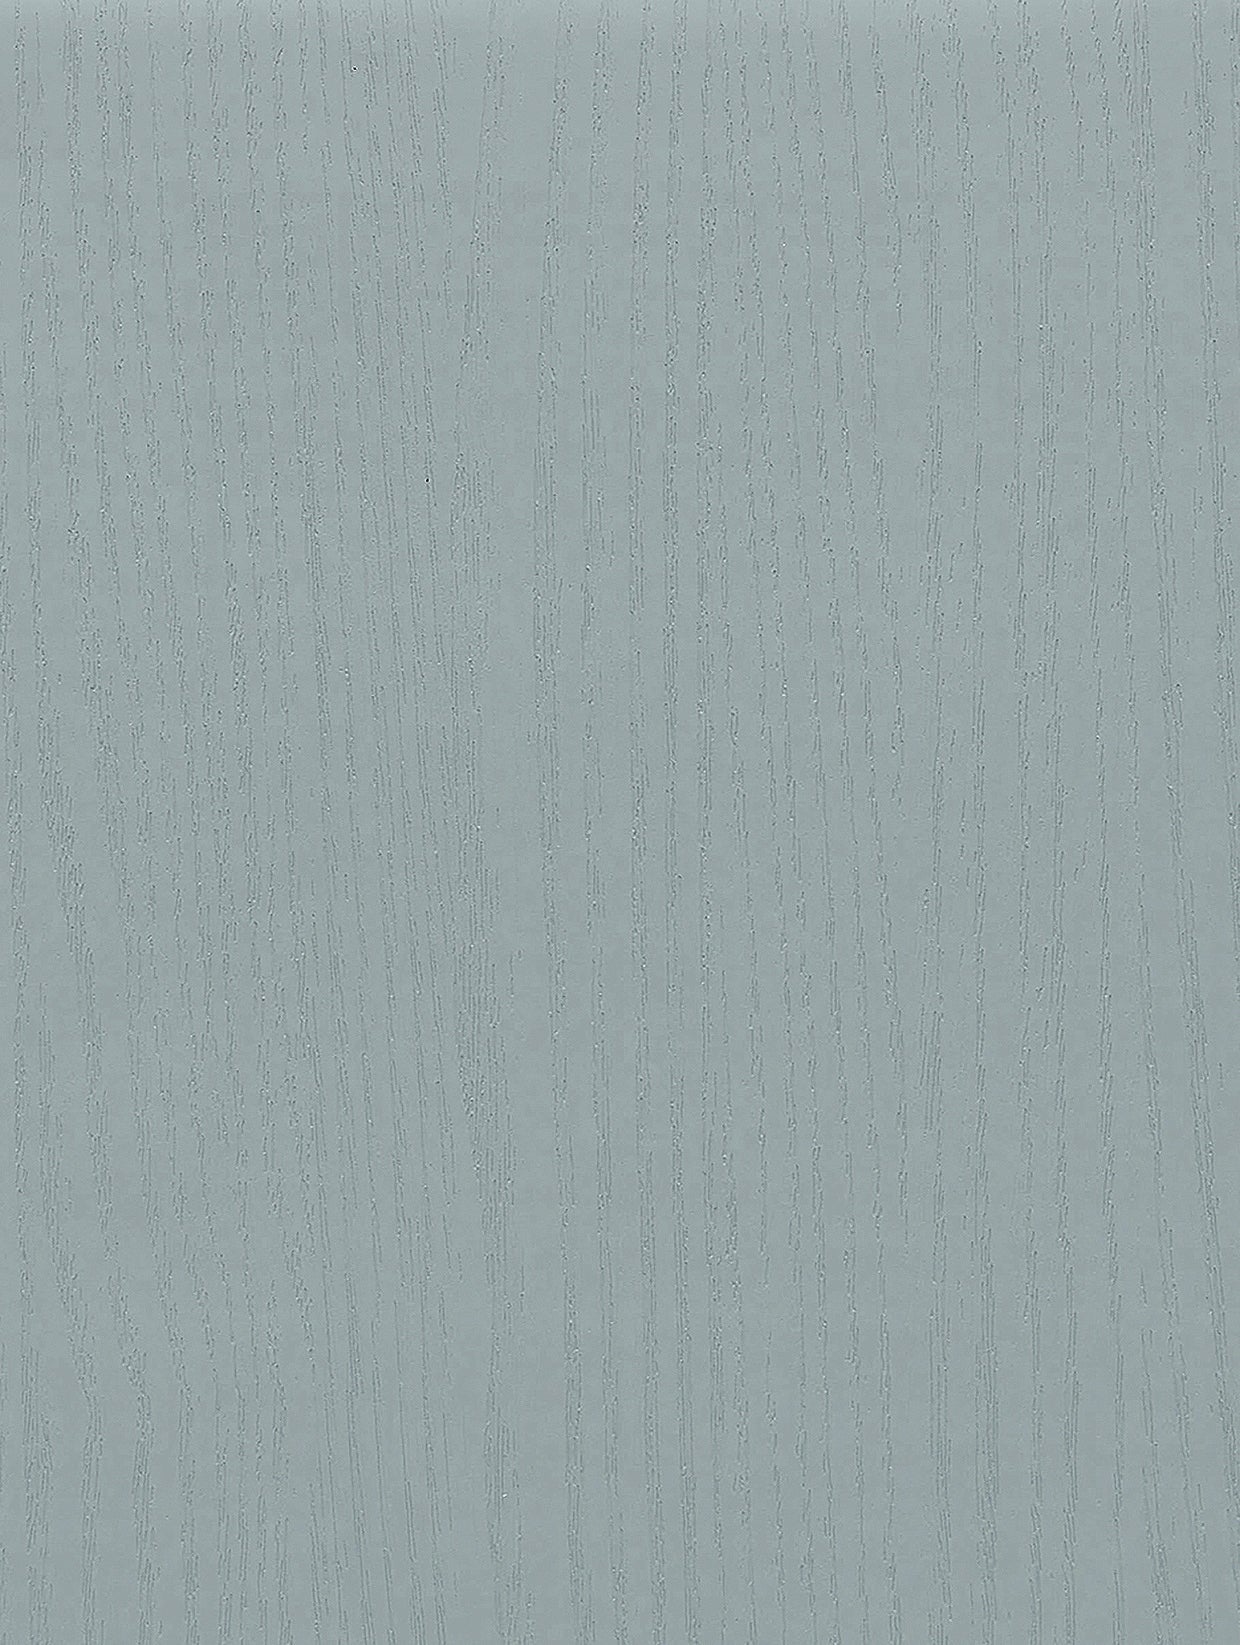 Wood-Painted | Holzdekor Lackiert Soft/Strukturiert - Möbelfolie Selbstklebende Tapete Vinyl Folie für Möbel Wand Regal (100x122cm)